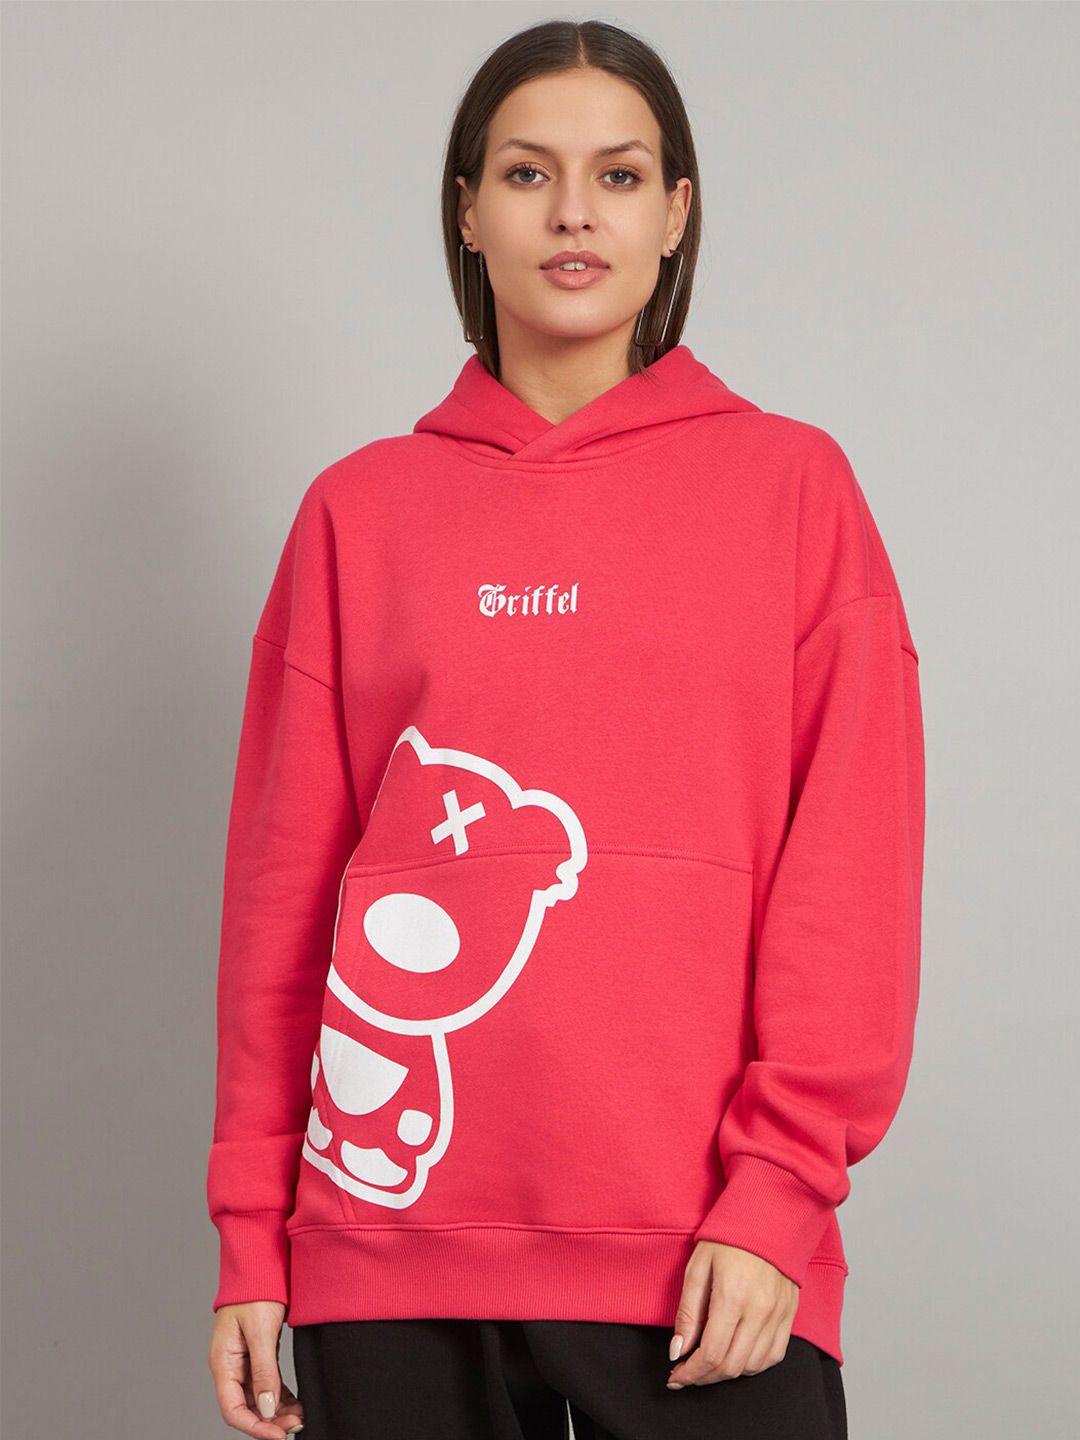 griffel graphic printed hooded fleece sweatshirt